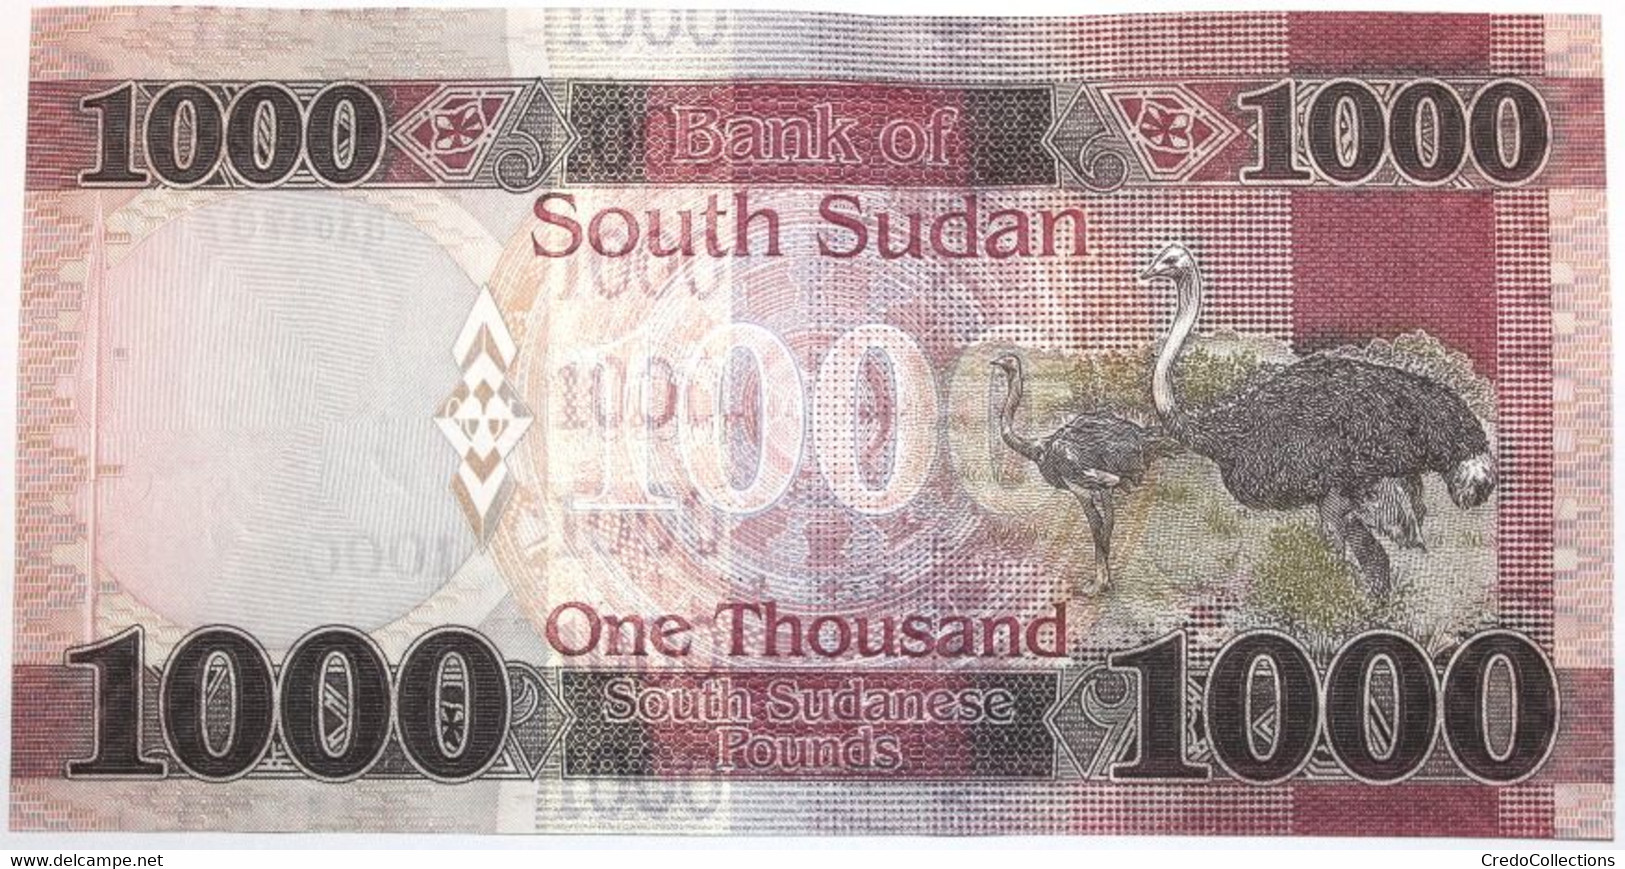 Soudan Du Sud - 1000 Pounds - 2020 - PICK NEW20 - NEUF - Südsudan